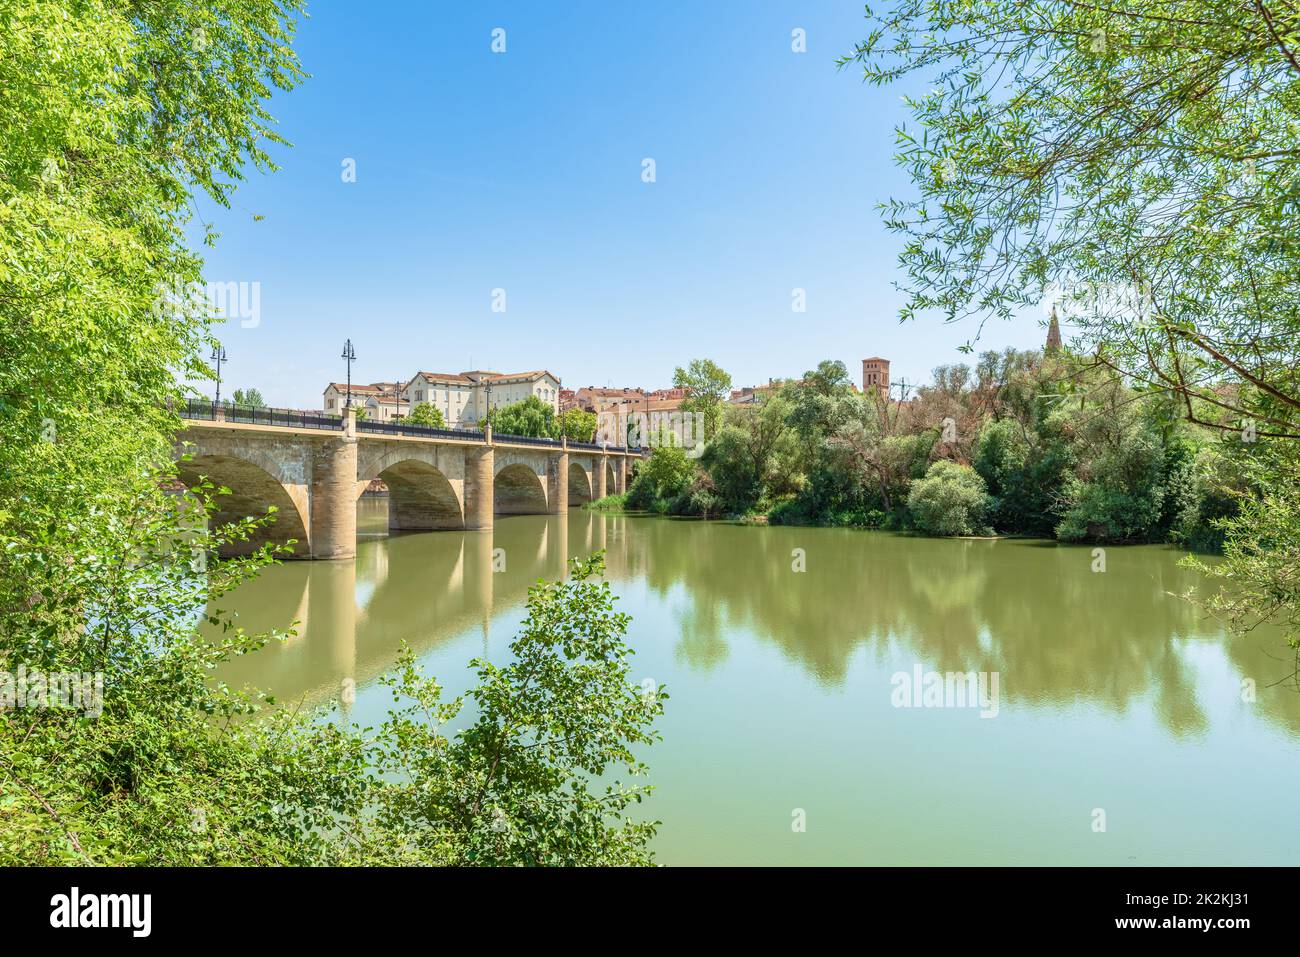 Scenic view of River Ebro with a stone bridge in Logroño city, La Rioja, Spain Stock Photo